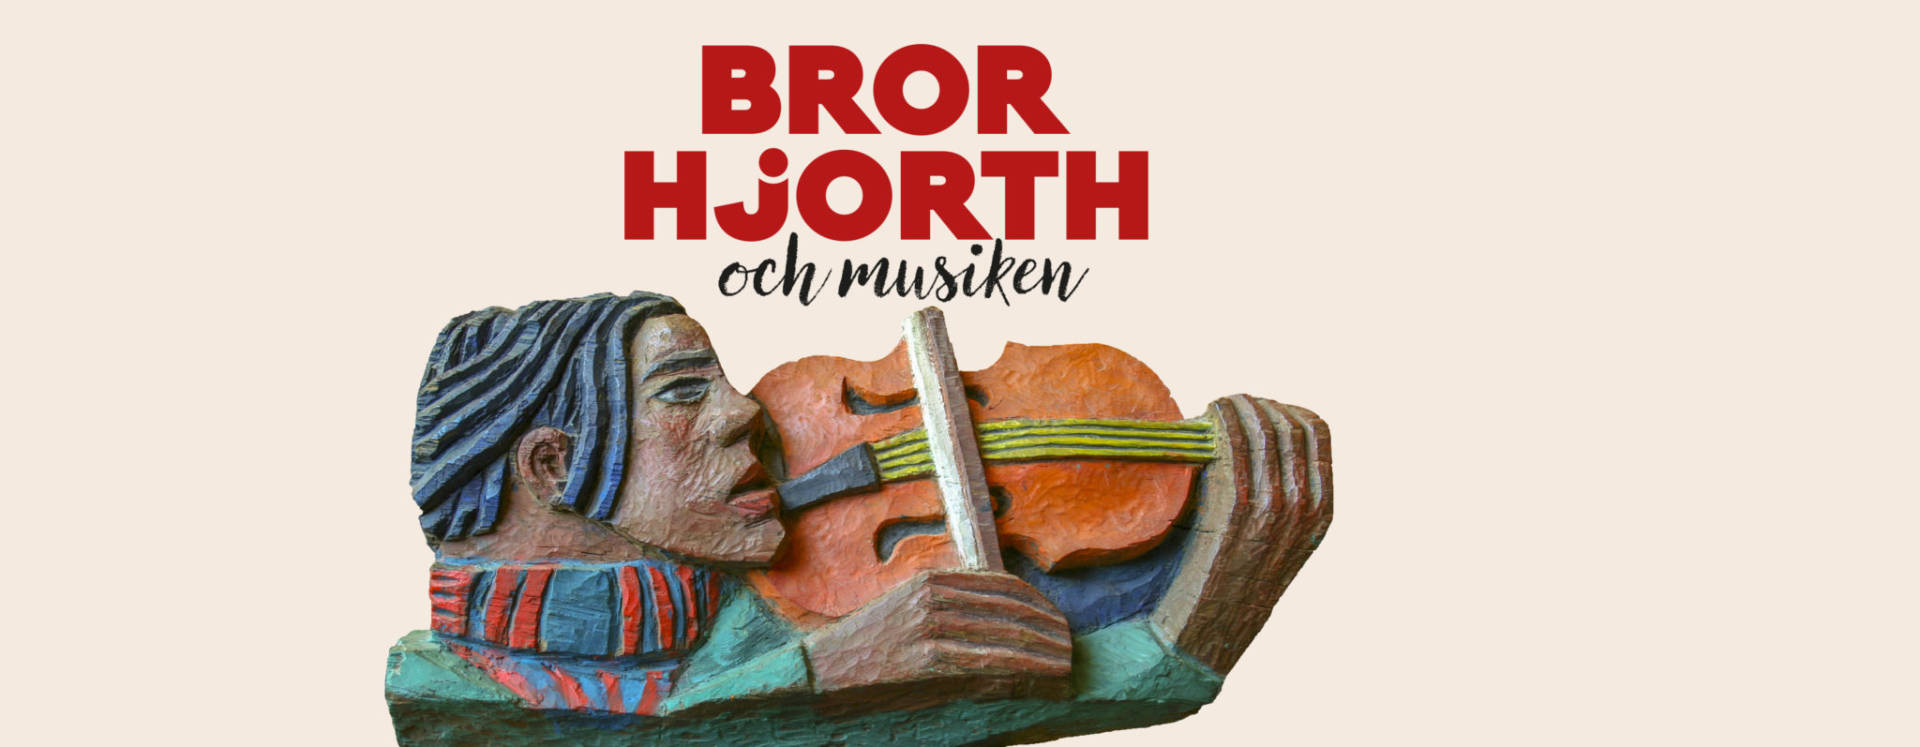 Bild på skulptur tillsammans med texten: Bror Hjorth och musiken